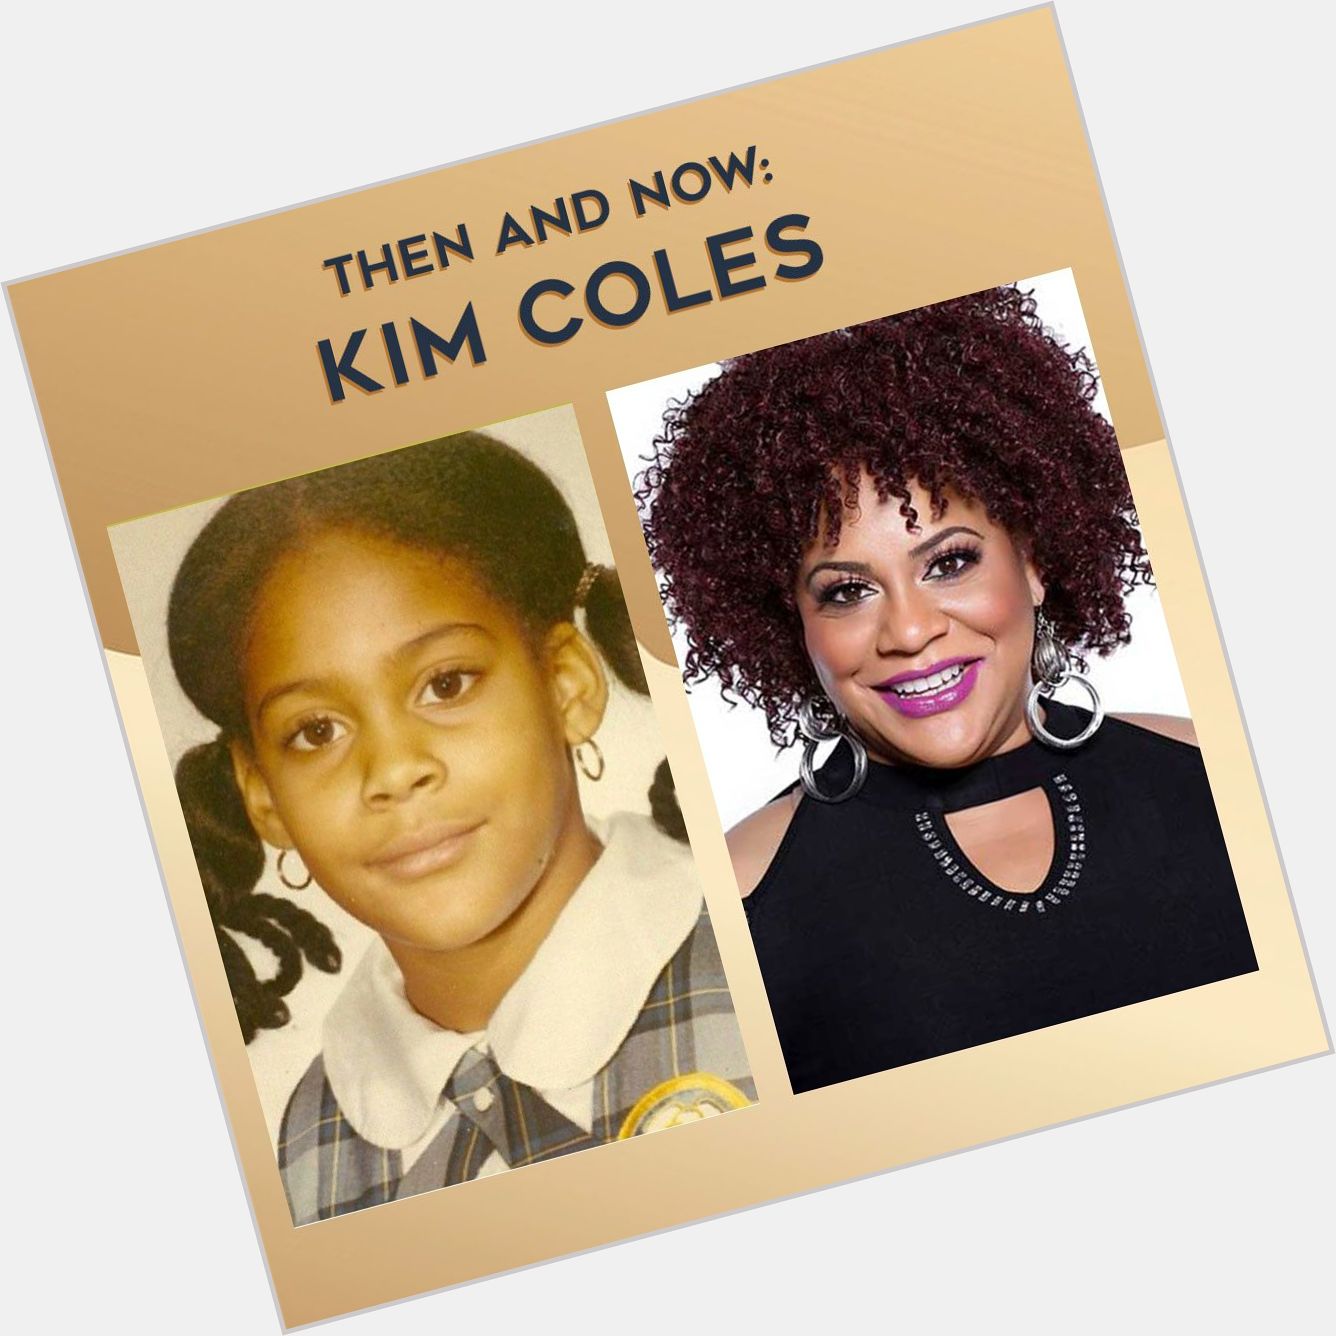 Happy Birthday Kim Coles! 